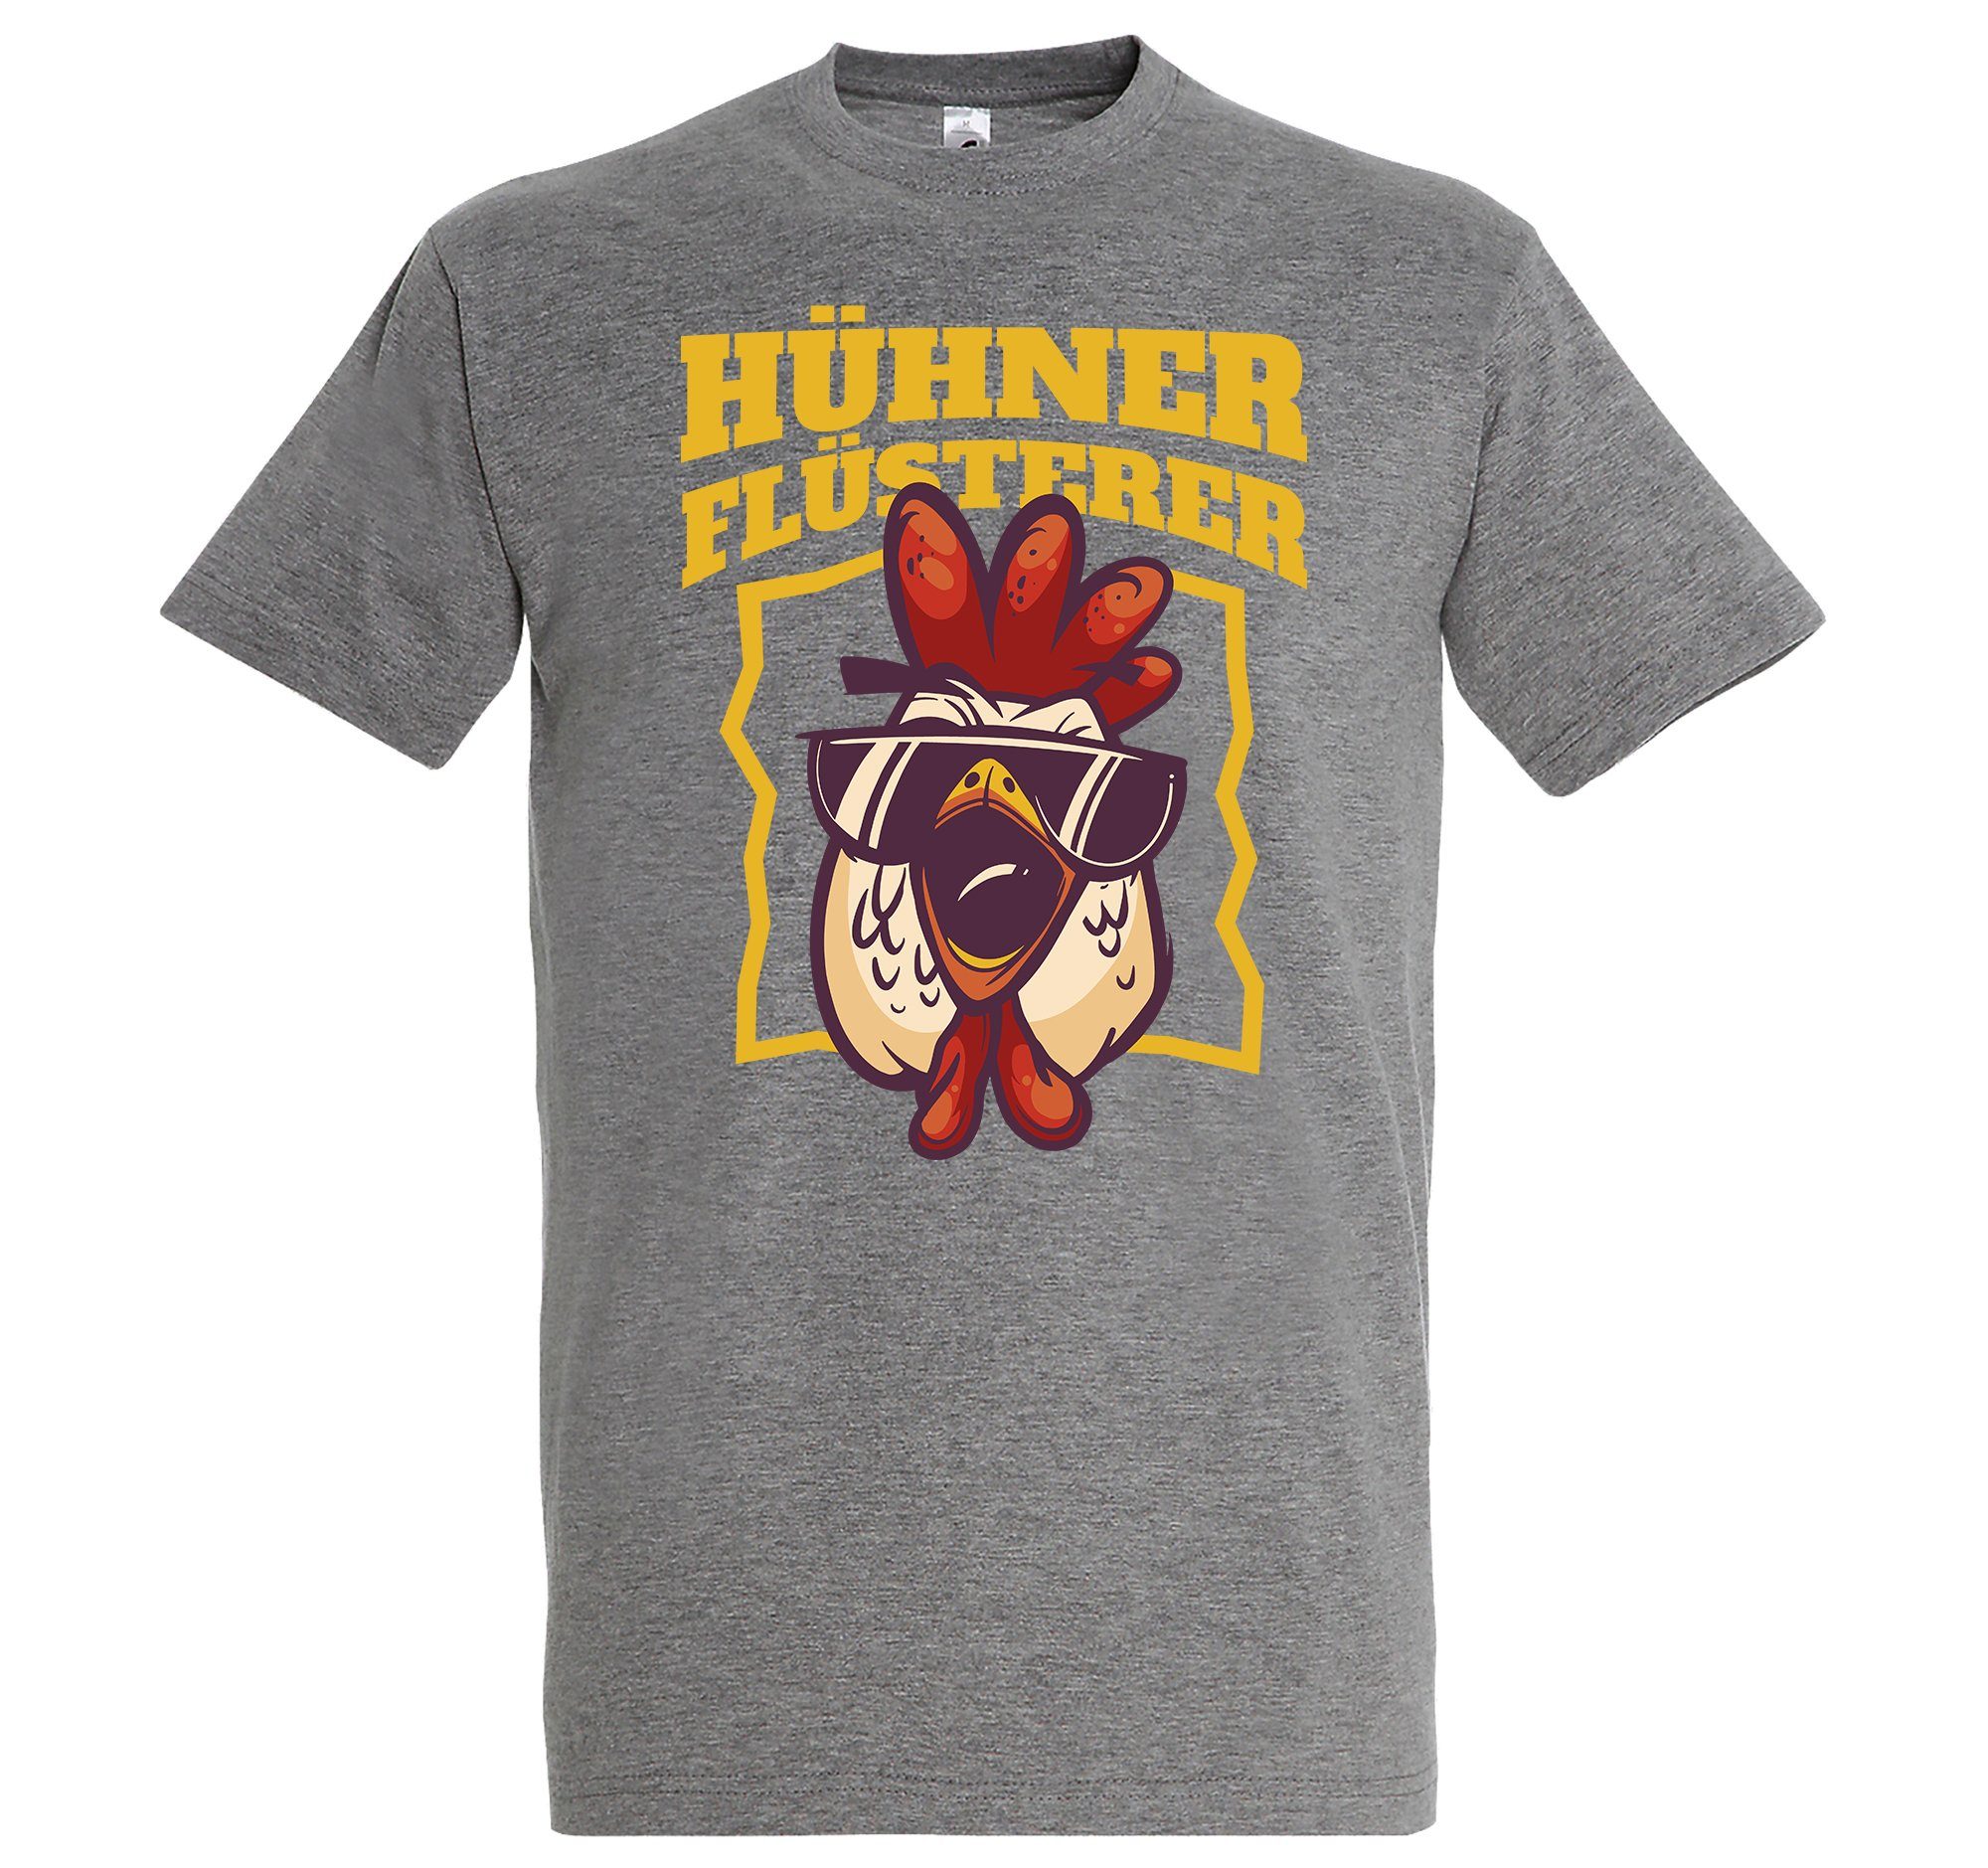 Youth Designz T-Shirt "Hühner Flüsterer" Herren Shirt mit lustigem Frontprint Grau